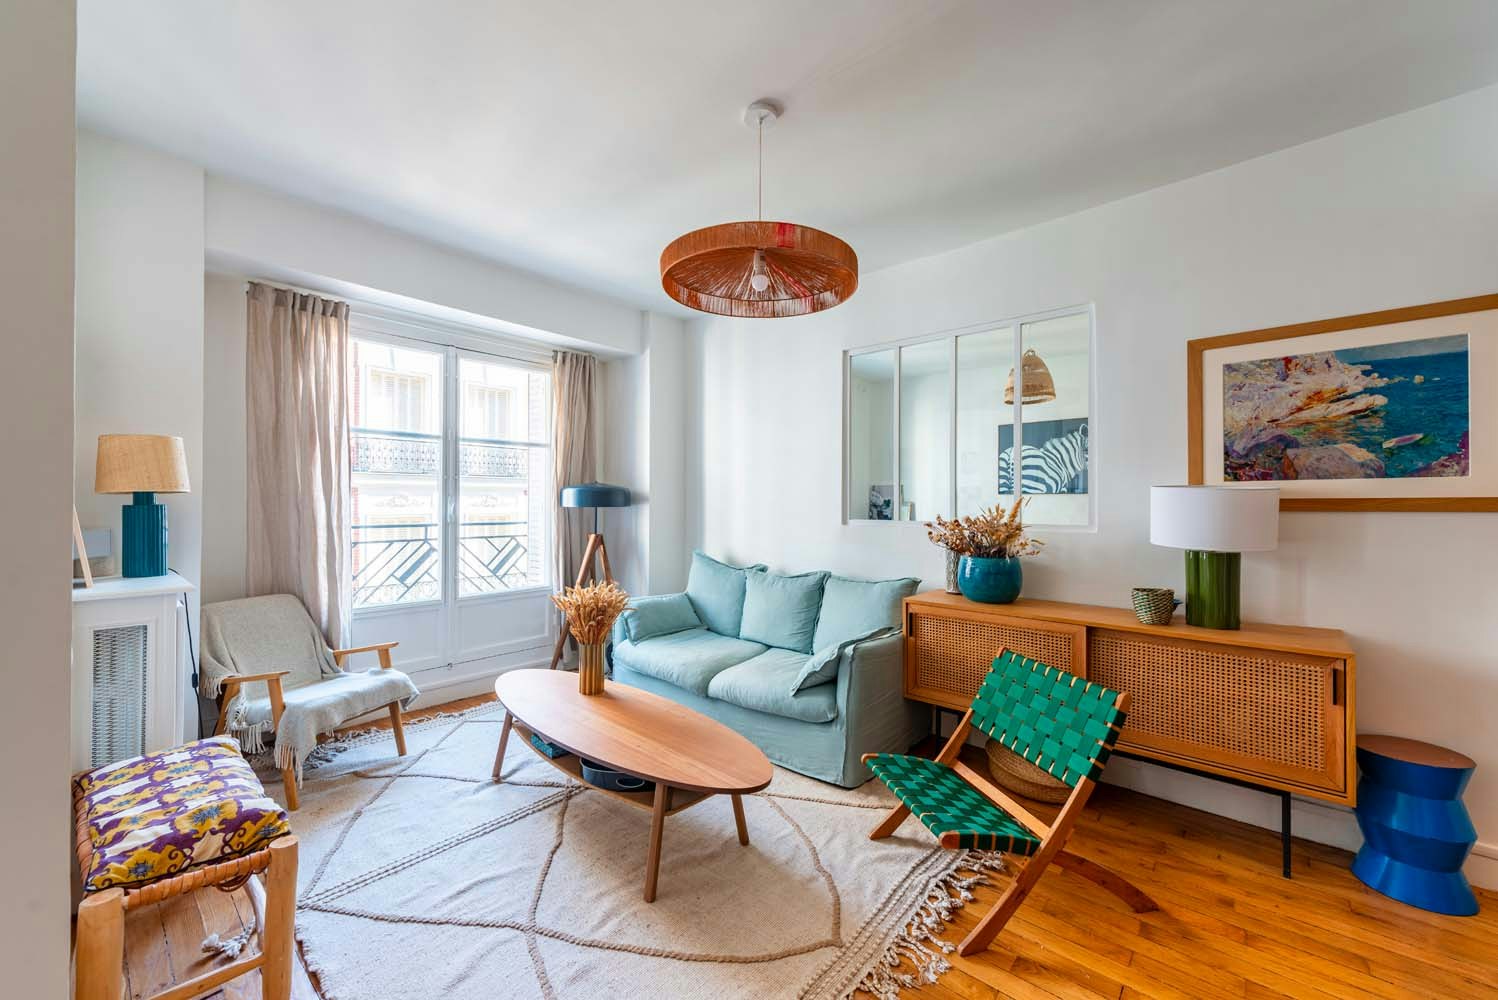 Rénovation appartement 63 m² - séjour avec ambiance colorée x boisée